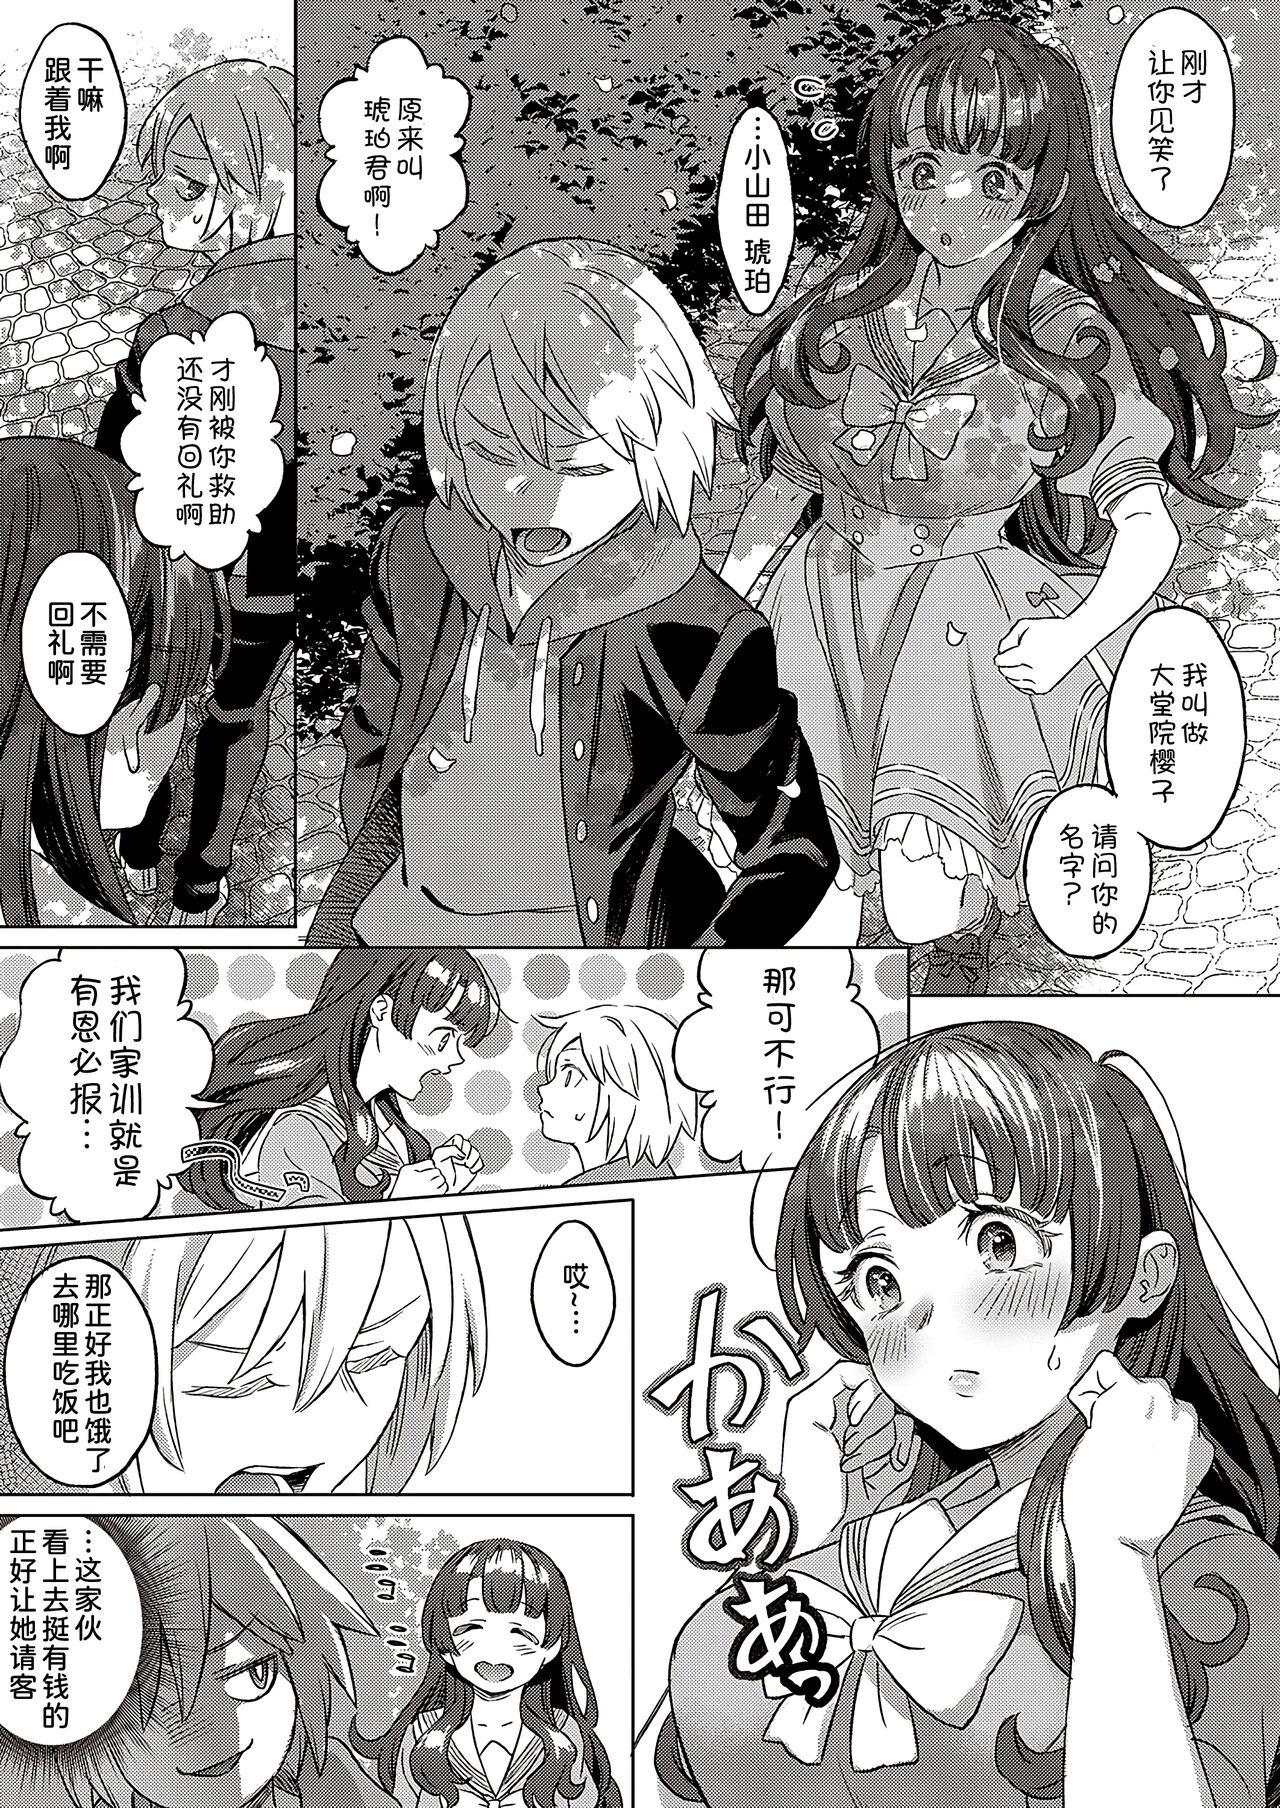 Slapping Kohakuiro no Machi, Sakura ga Ita Kisetsu Condom - Page 4